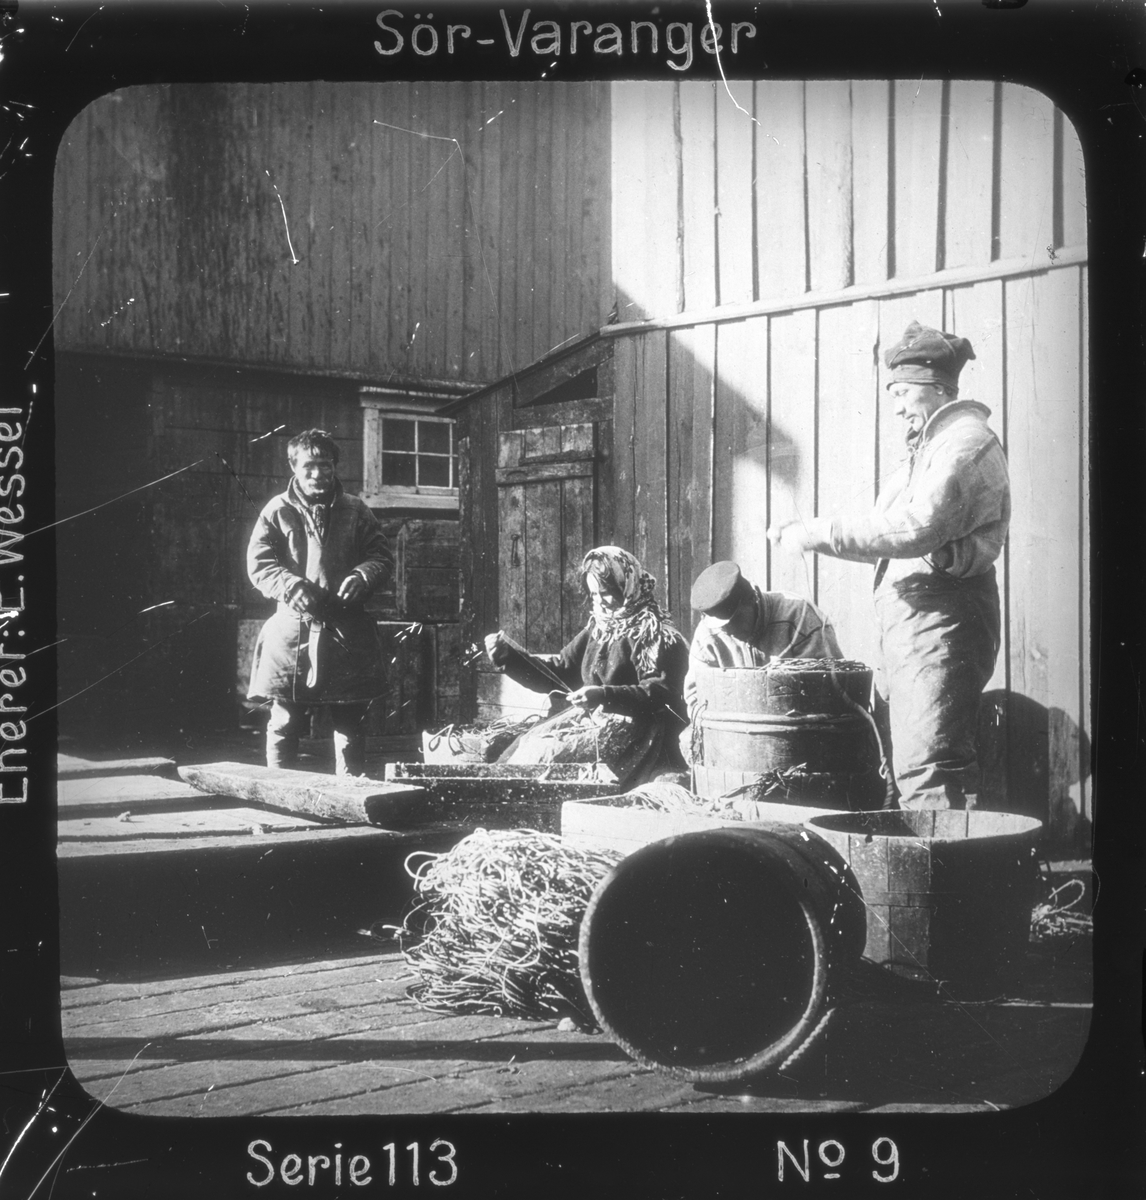 Samiske fiskere setter agn på liner i fiskeværet Kiberg, Vardø, Finnmark. Linestamper i forgrunnen. 
Motivet har nr. i lysbildeforedraget kalt  "I lappernes land - Sør-Varanger", utgitt i Nerliens Lysbilledserier, serie nr 113. 